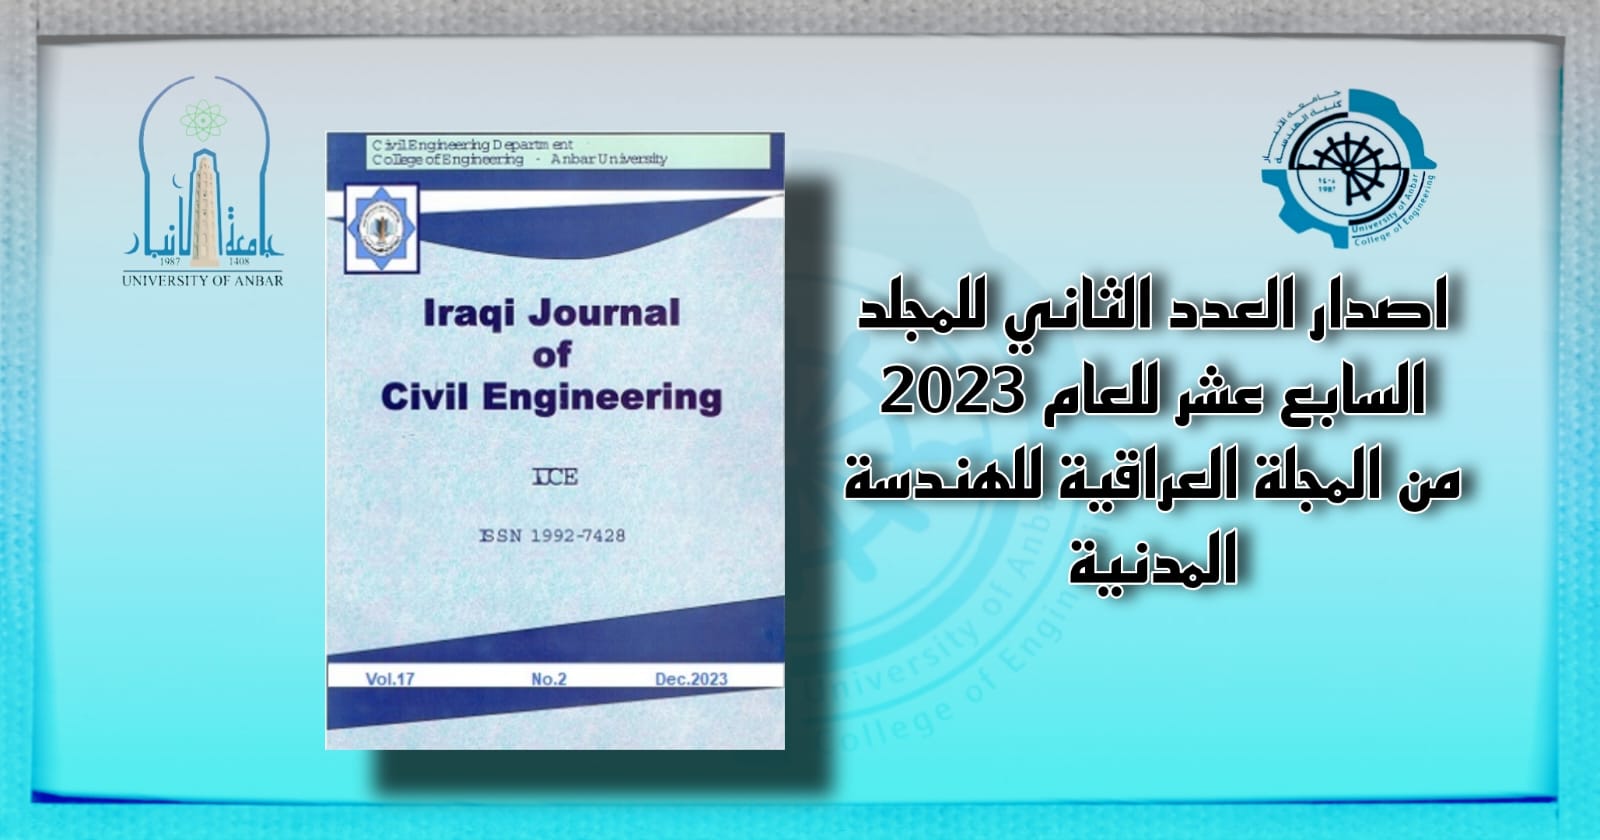  اصدار العدد الثاني للمجلد السابع عشر للعام 2023 من المجلة العراقية للهندسة المدنية